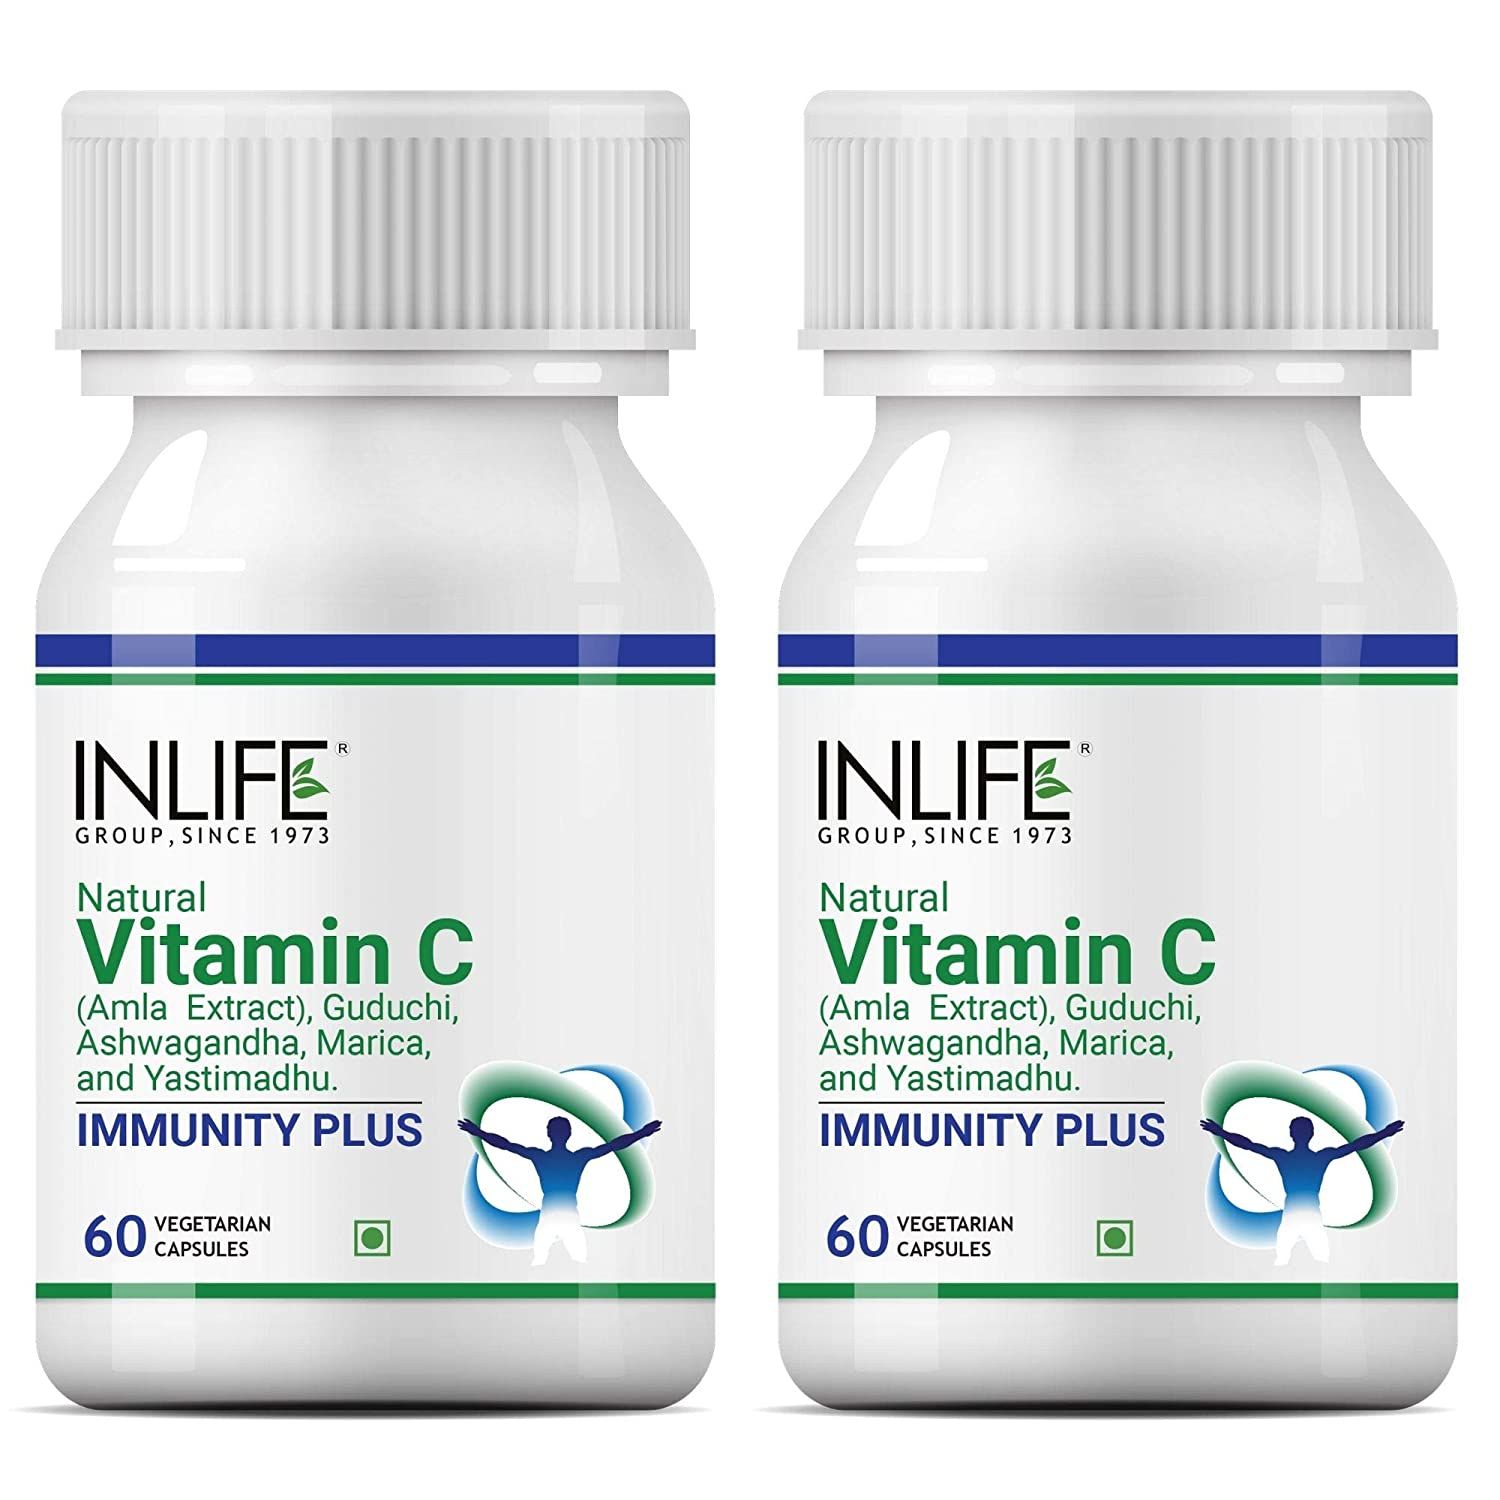 INLIFE Natural Vitamin C Image